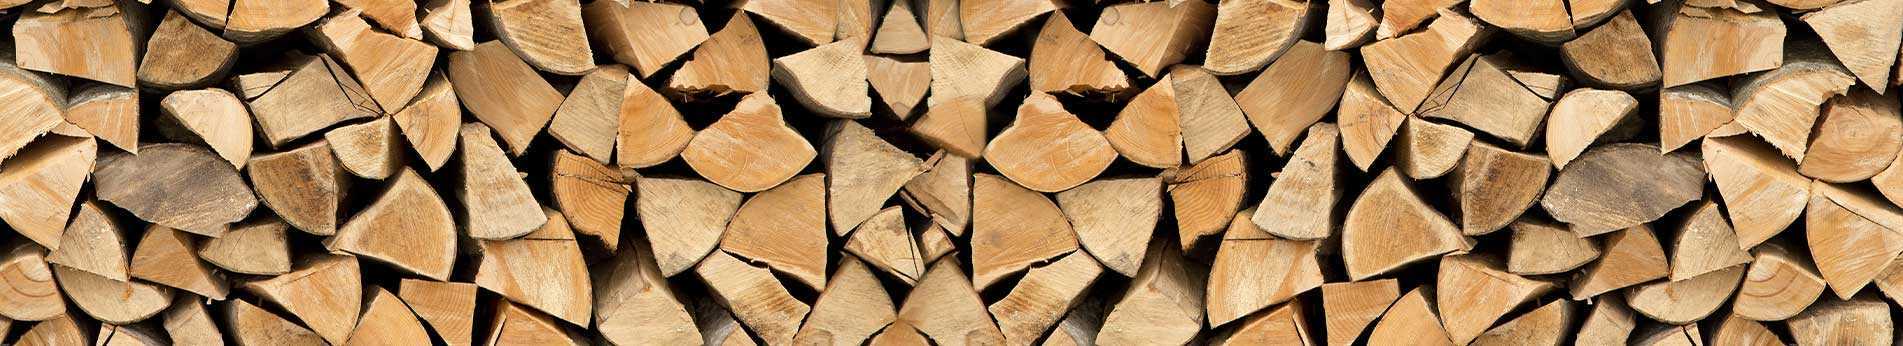 Coupe et traitement du bois